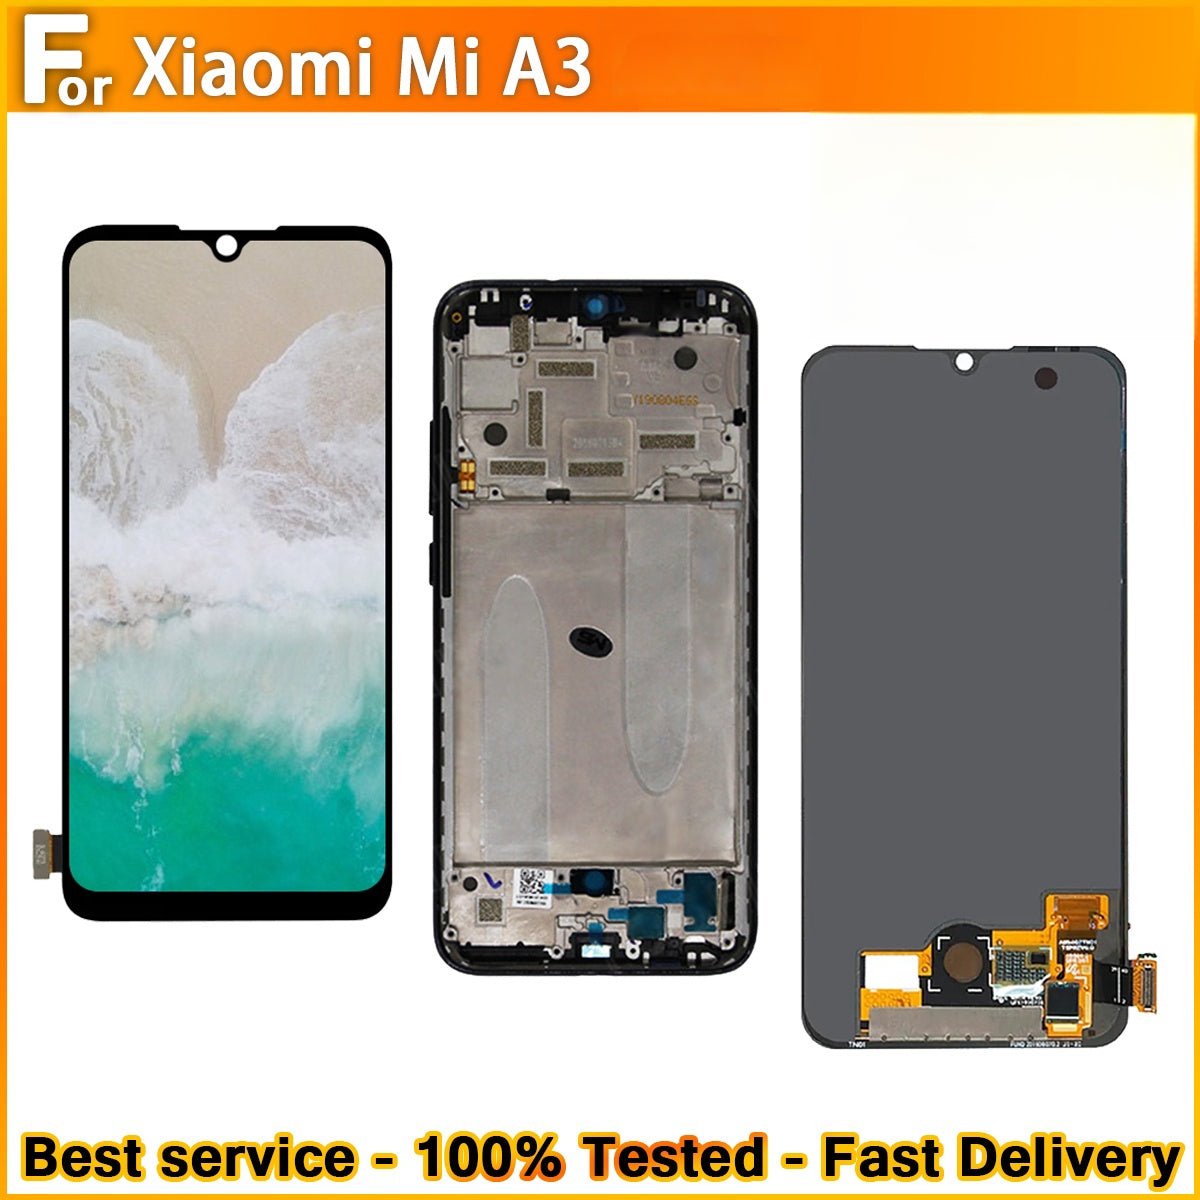 xiomi mi a3 lcd screen - Buy xiomi mi a3 lcd screen at Best Price in  Malaysia